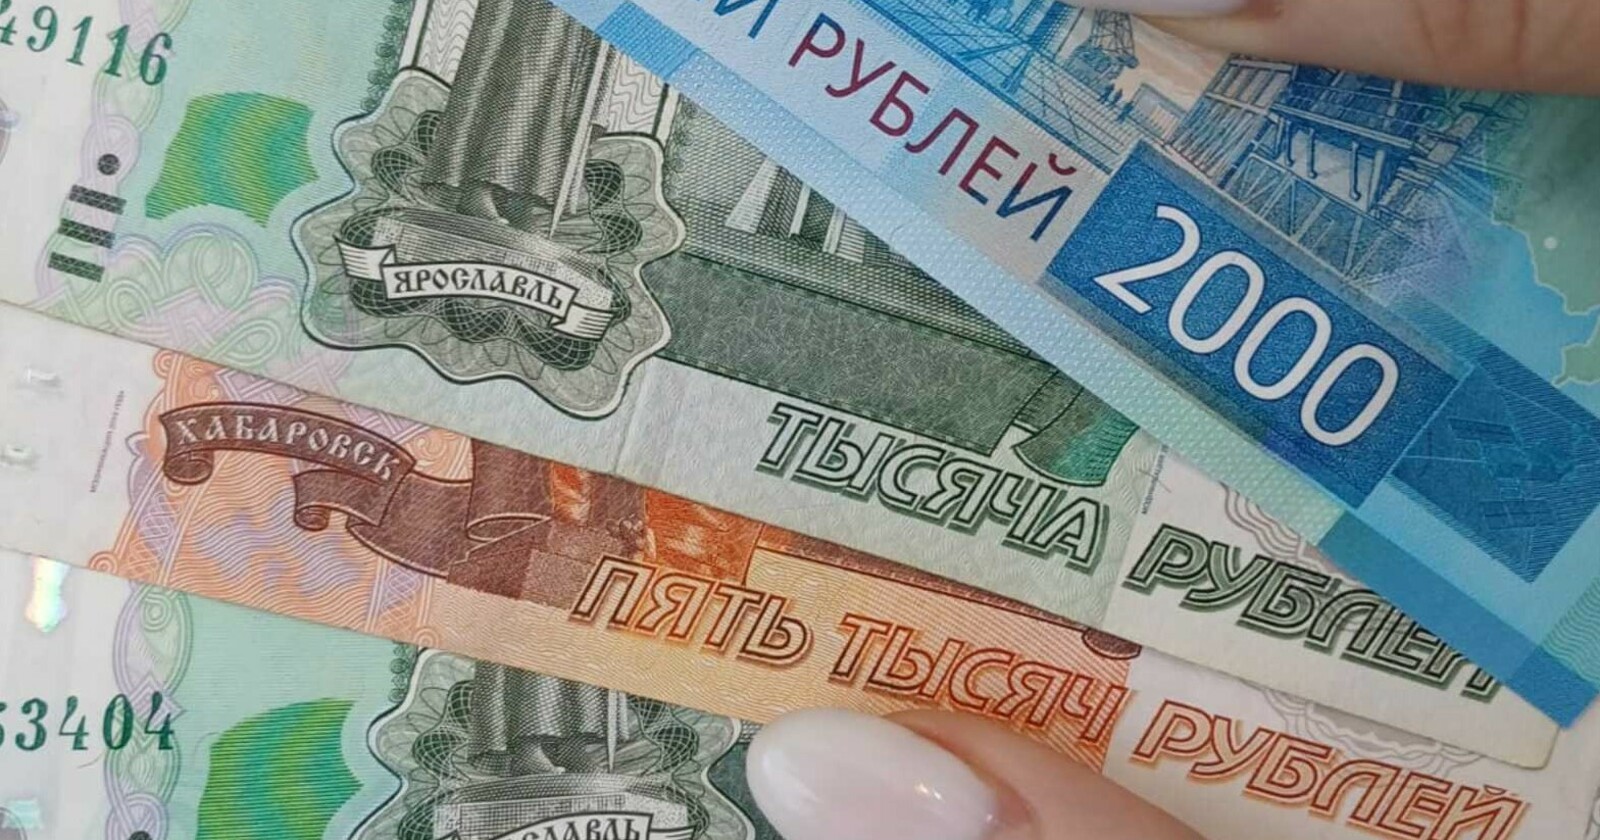 Жители Башкирии могут получить единовременную выплату в 250 тыс рублей